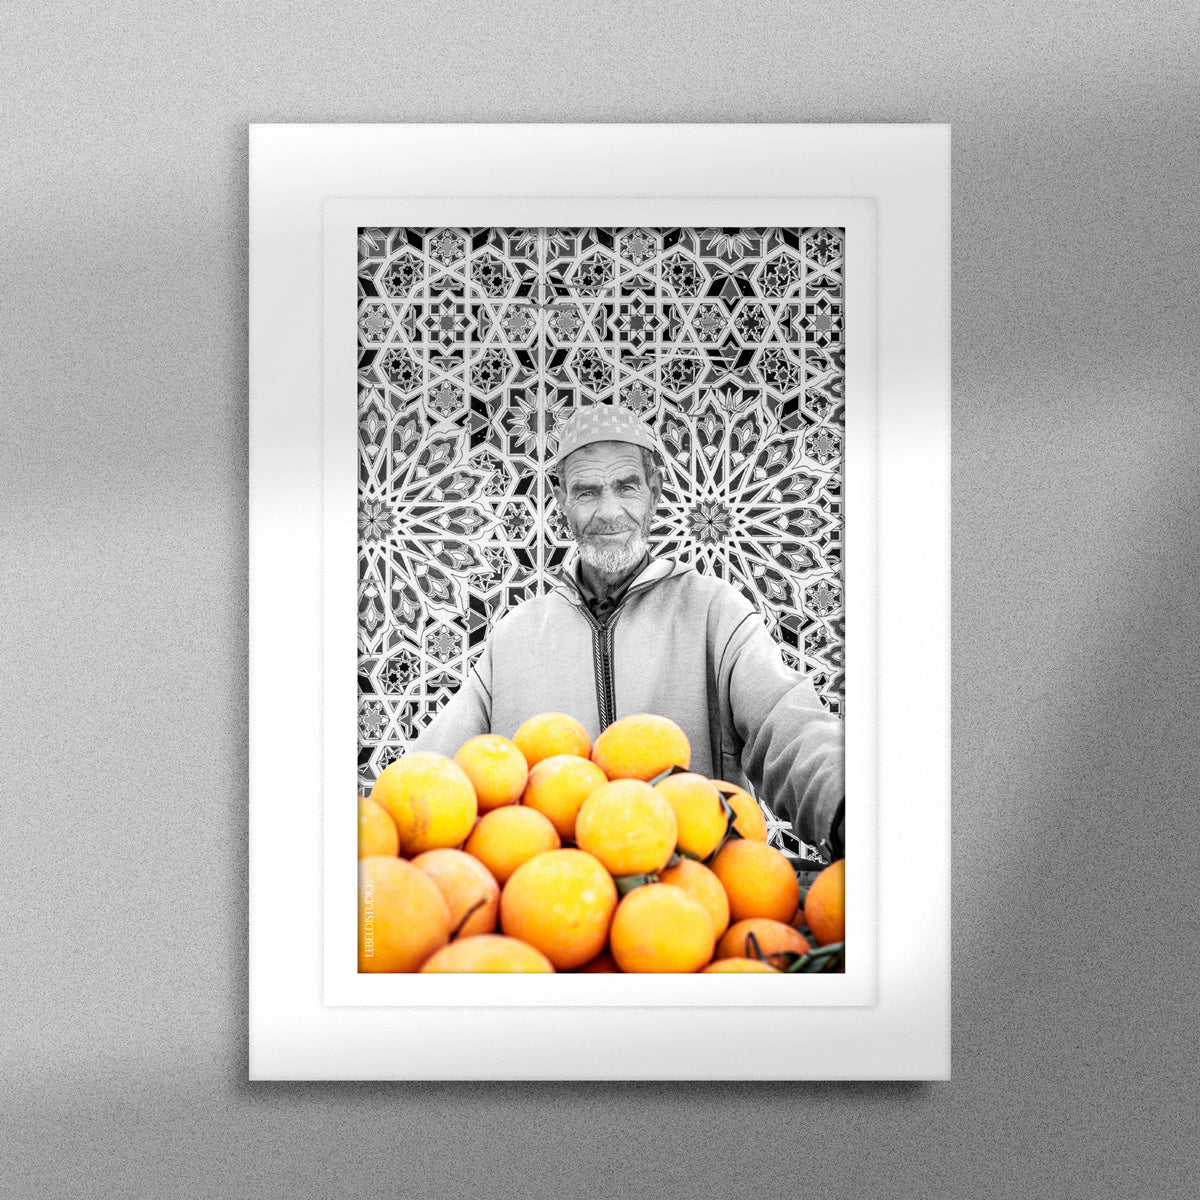 Tableau décoratif en noir et blanc d'un vieux marchand d'oranges très souriant, encadré dans un cadre blanc - Format A5.